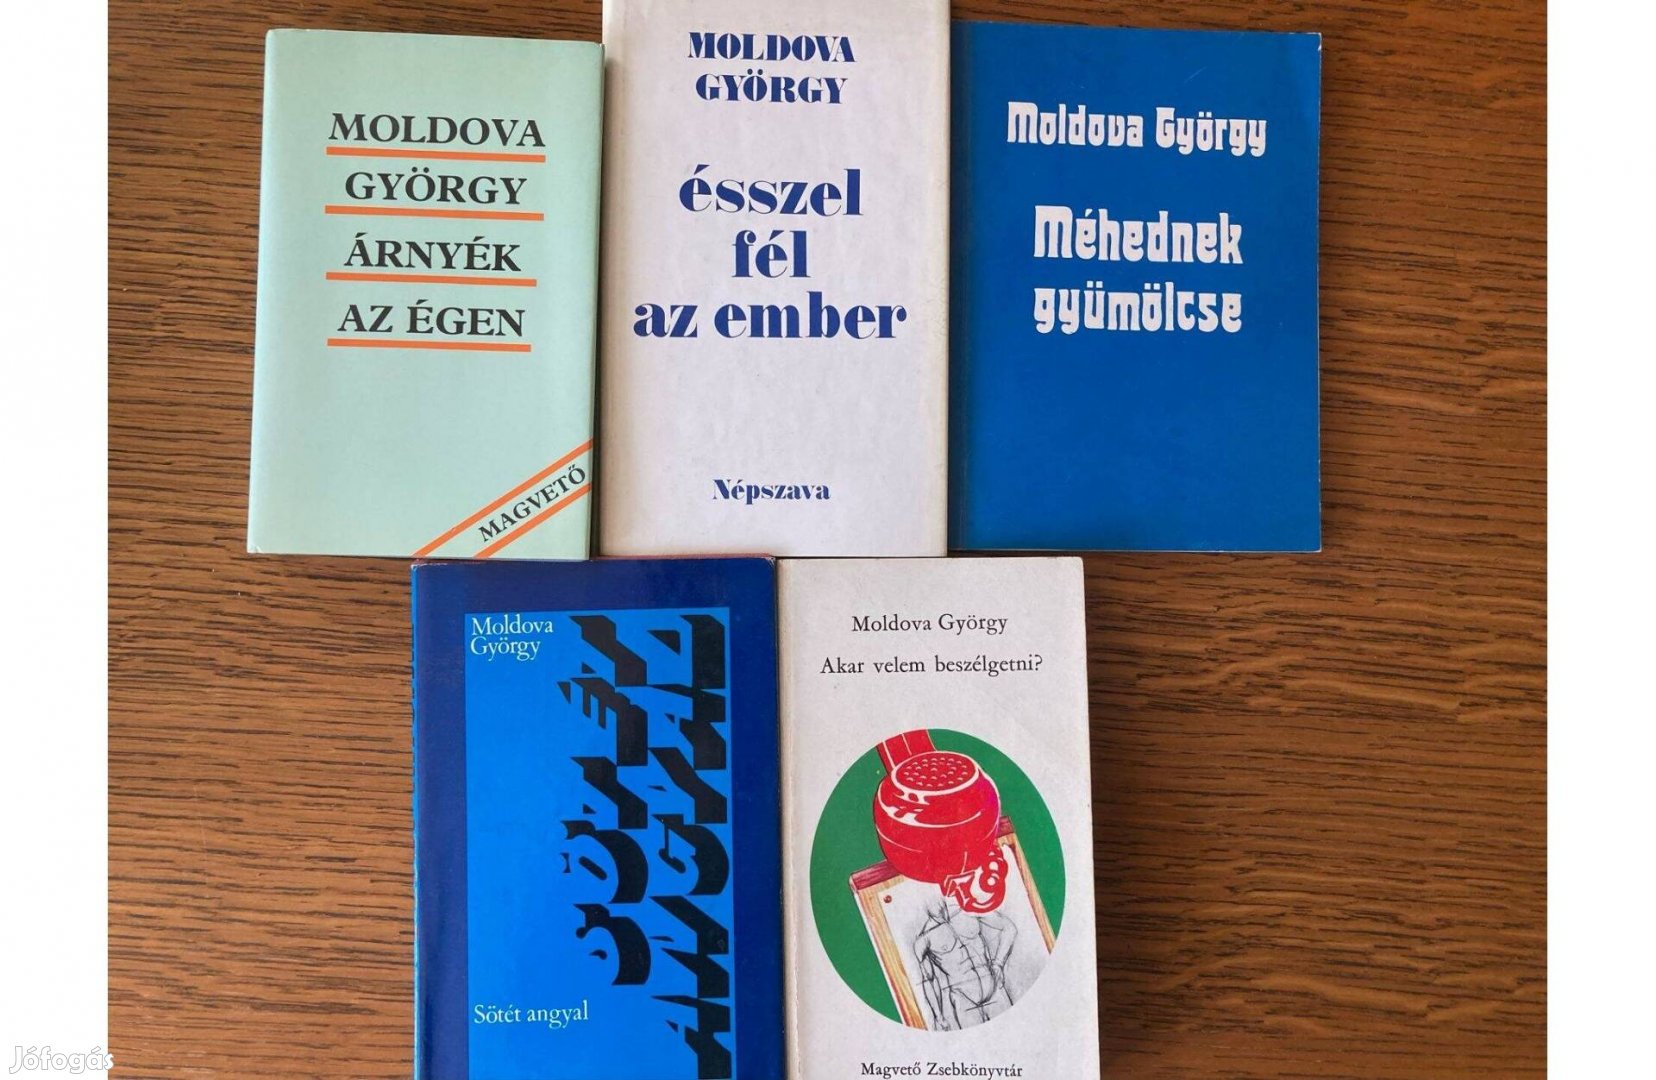 Moldova György regények